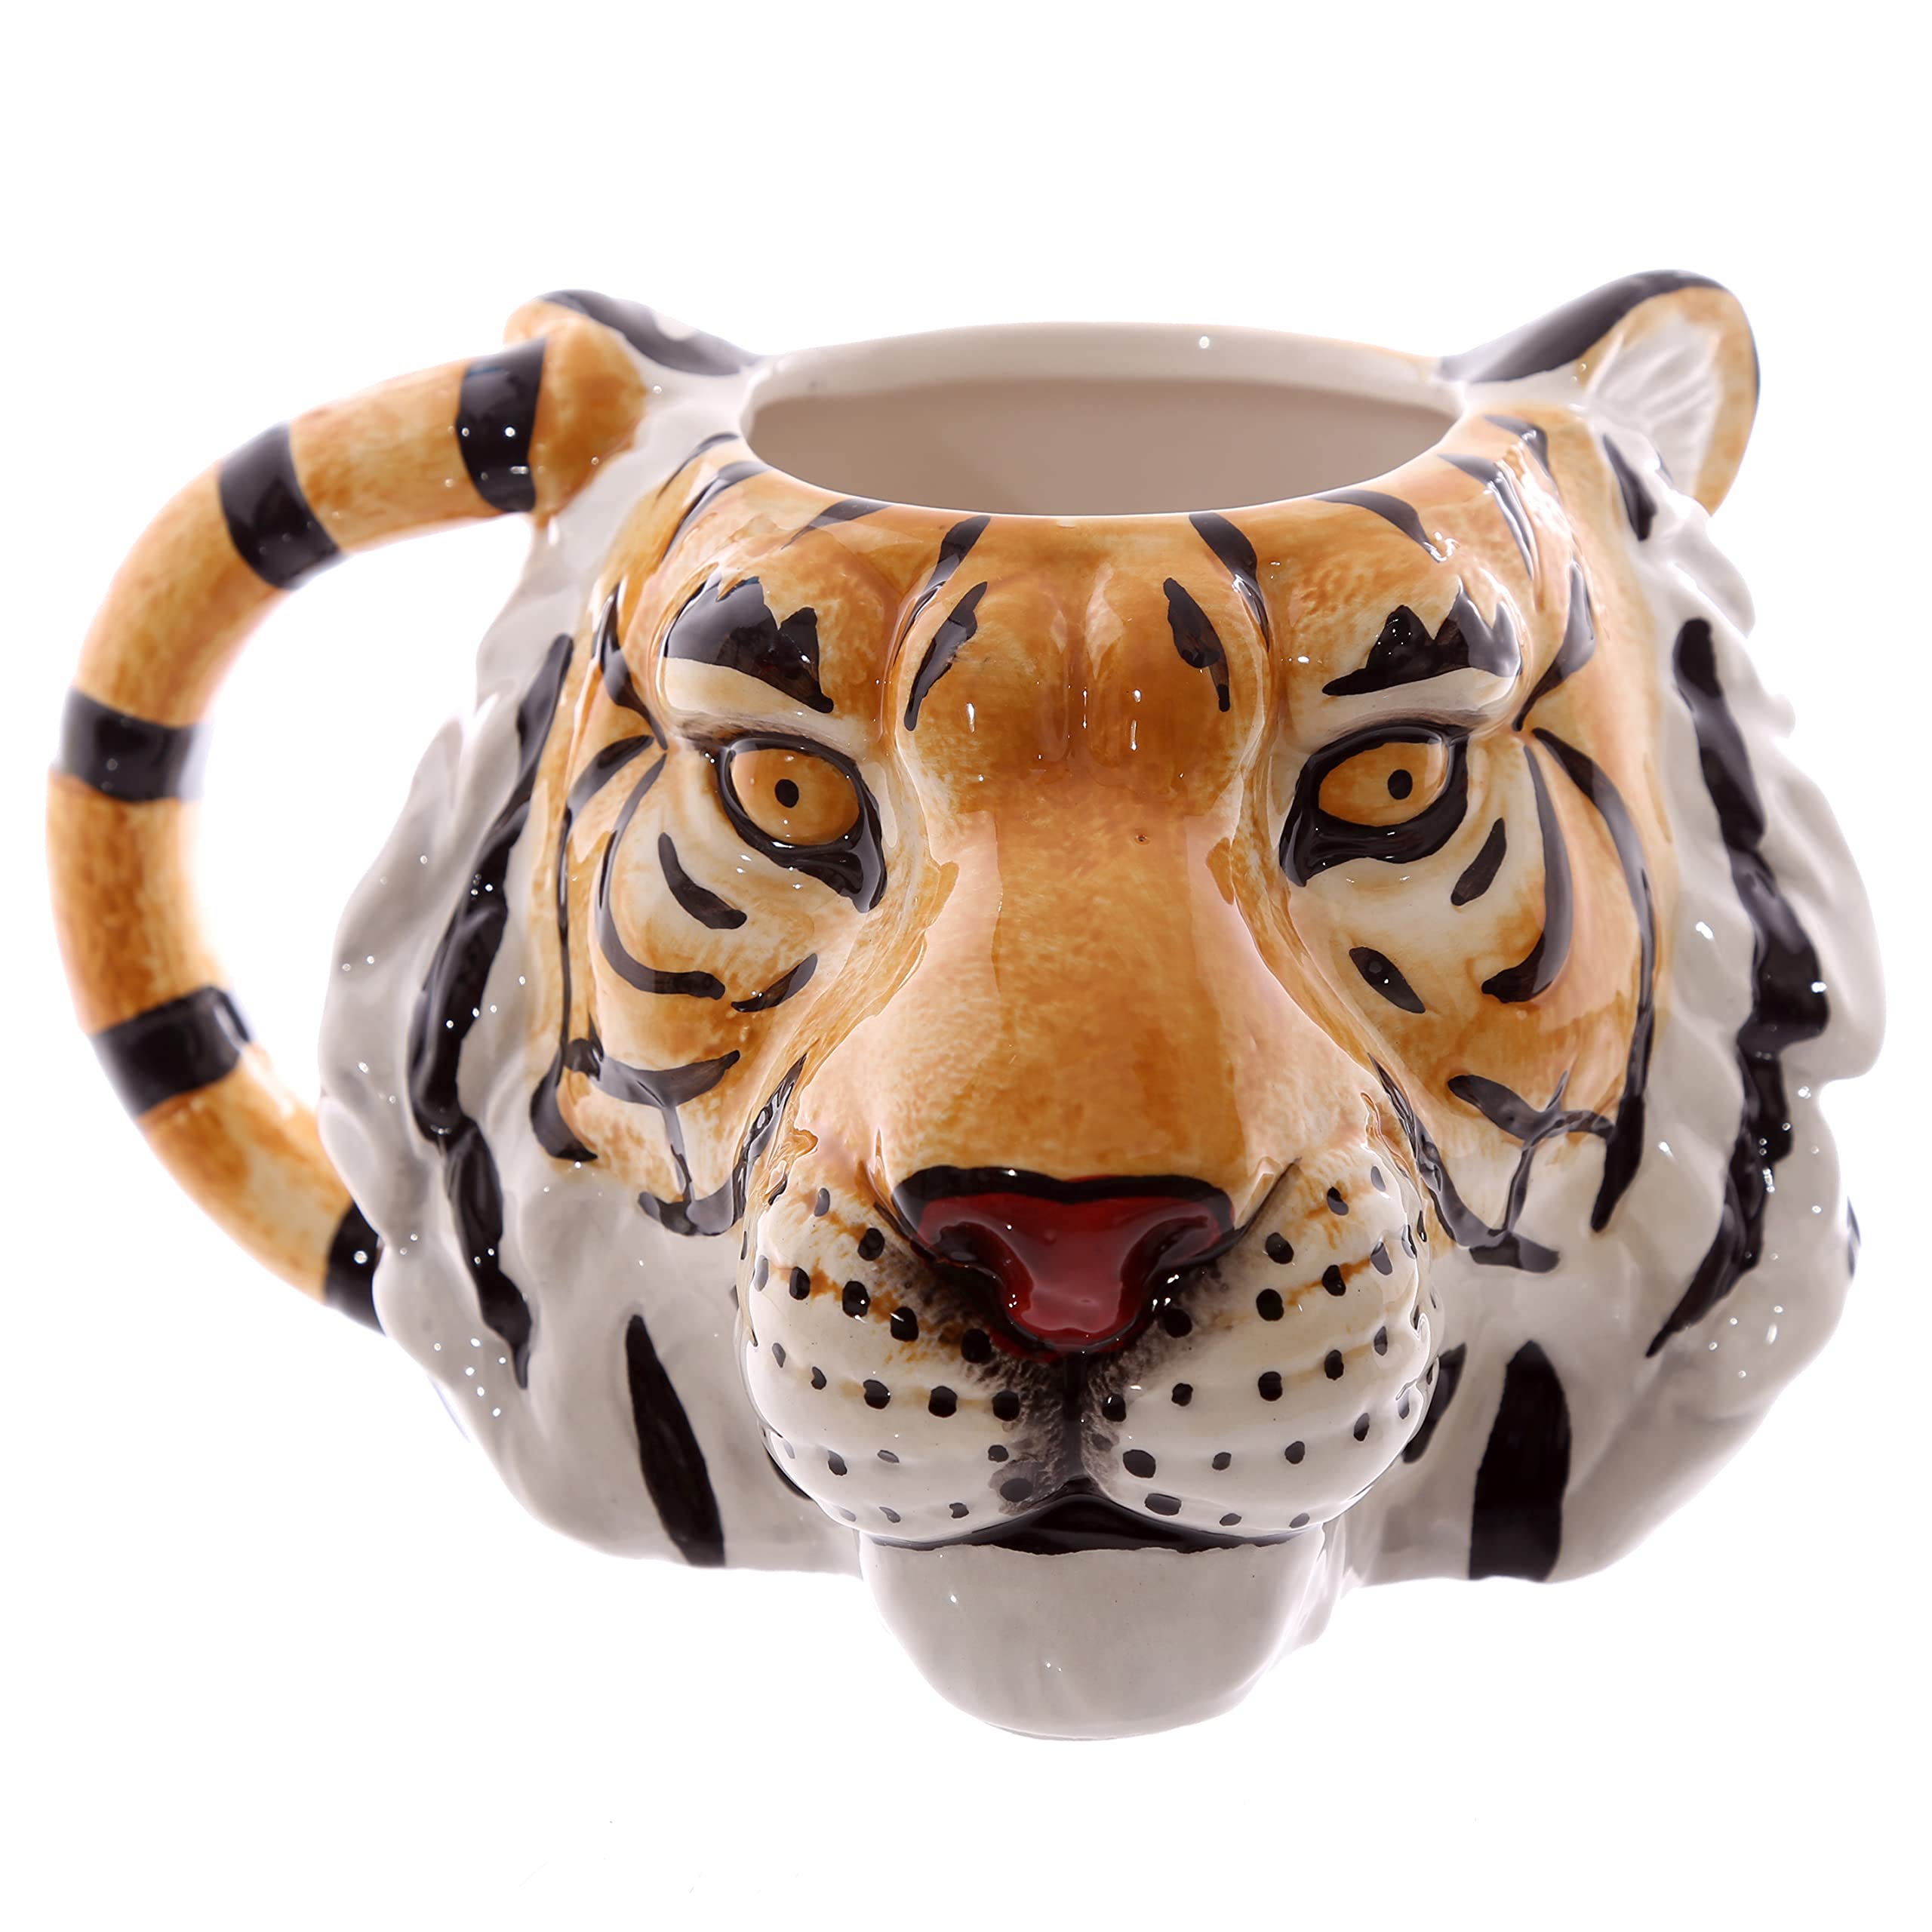 Magnifique Puckator MUG227 Mug Design Tête de Tigre Céramique Orange/Noir/Blanc 8J7Cr5XJ3 frais